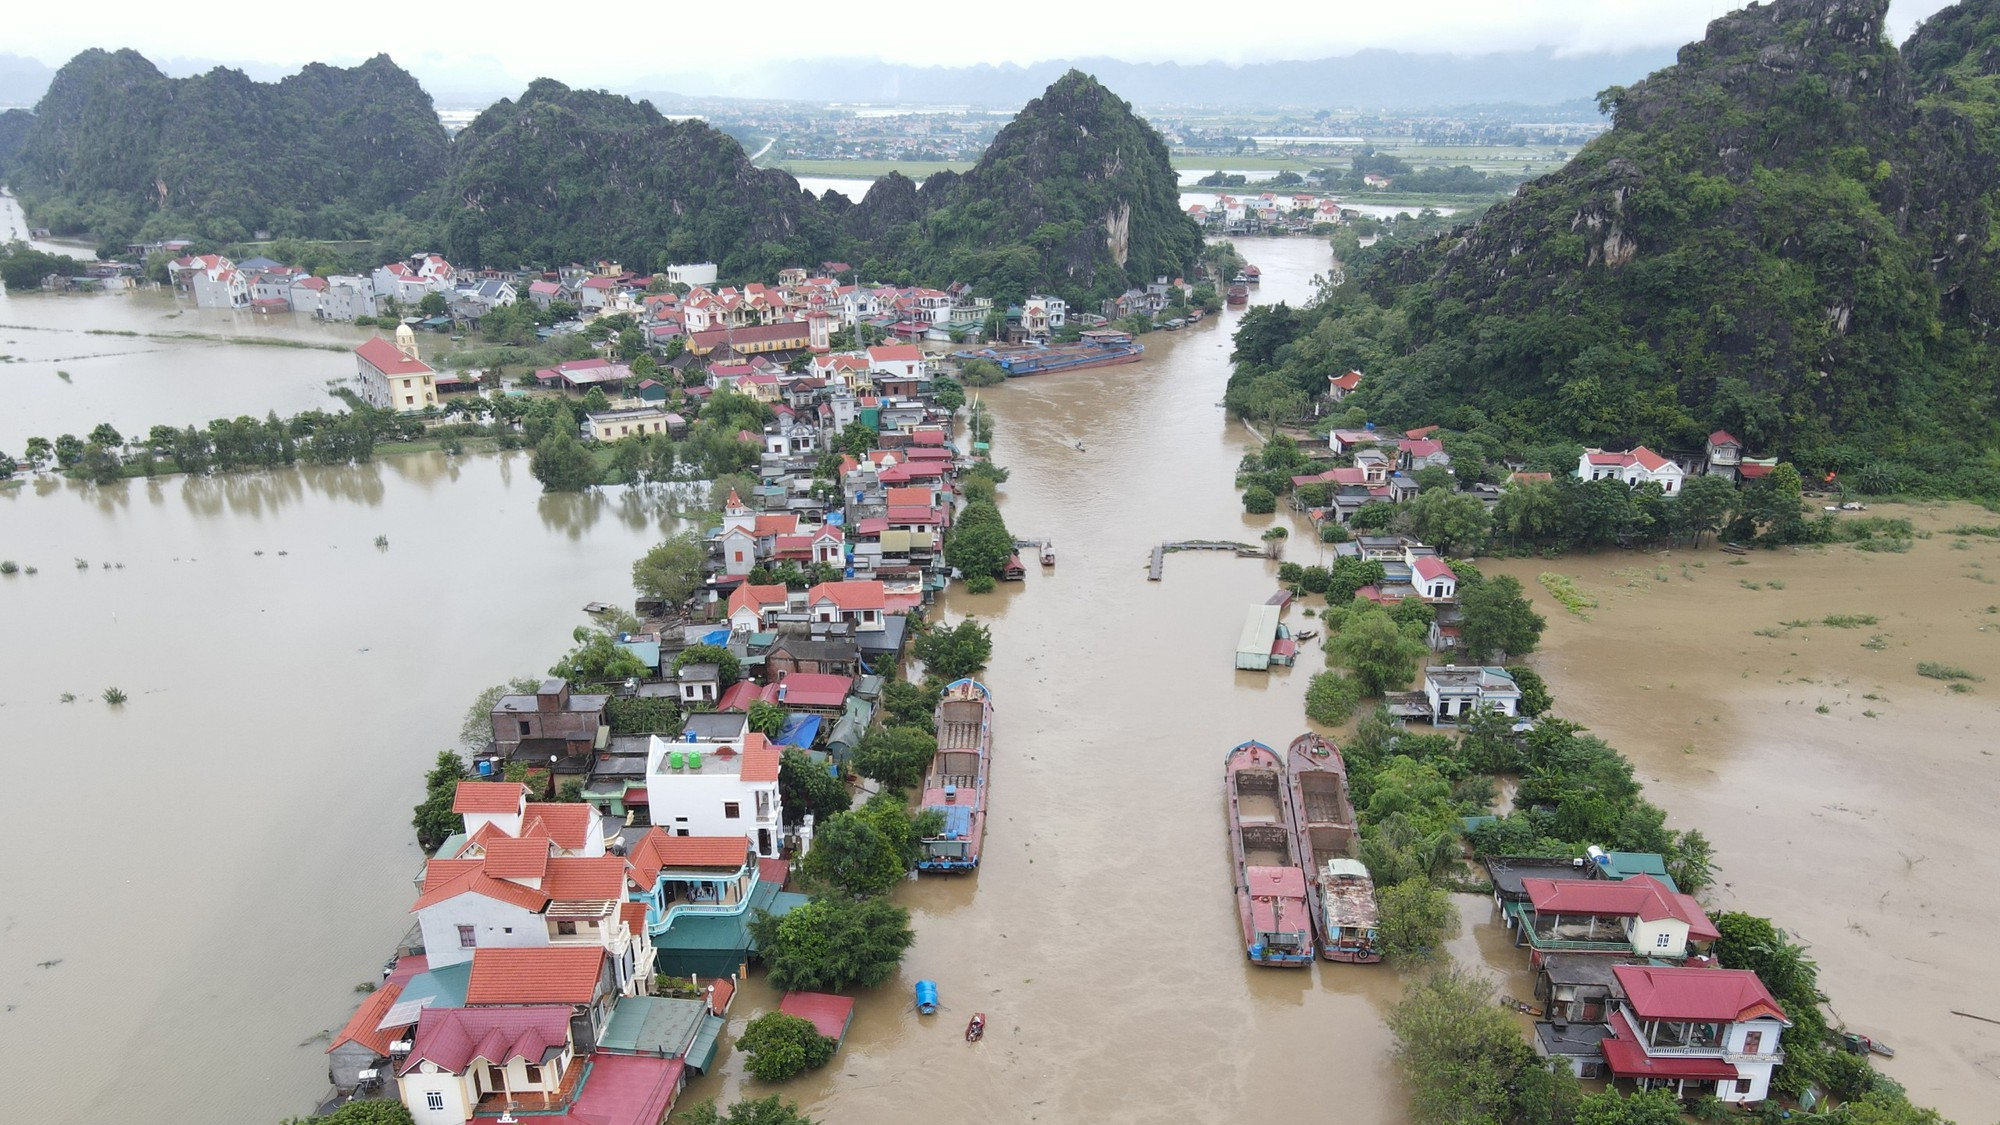 Nước sông Hoàng Long dâng cao gây ngập hàng trăm nhà dân - Ảnh 1.